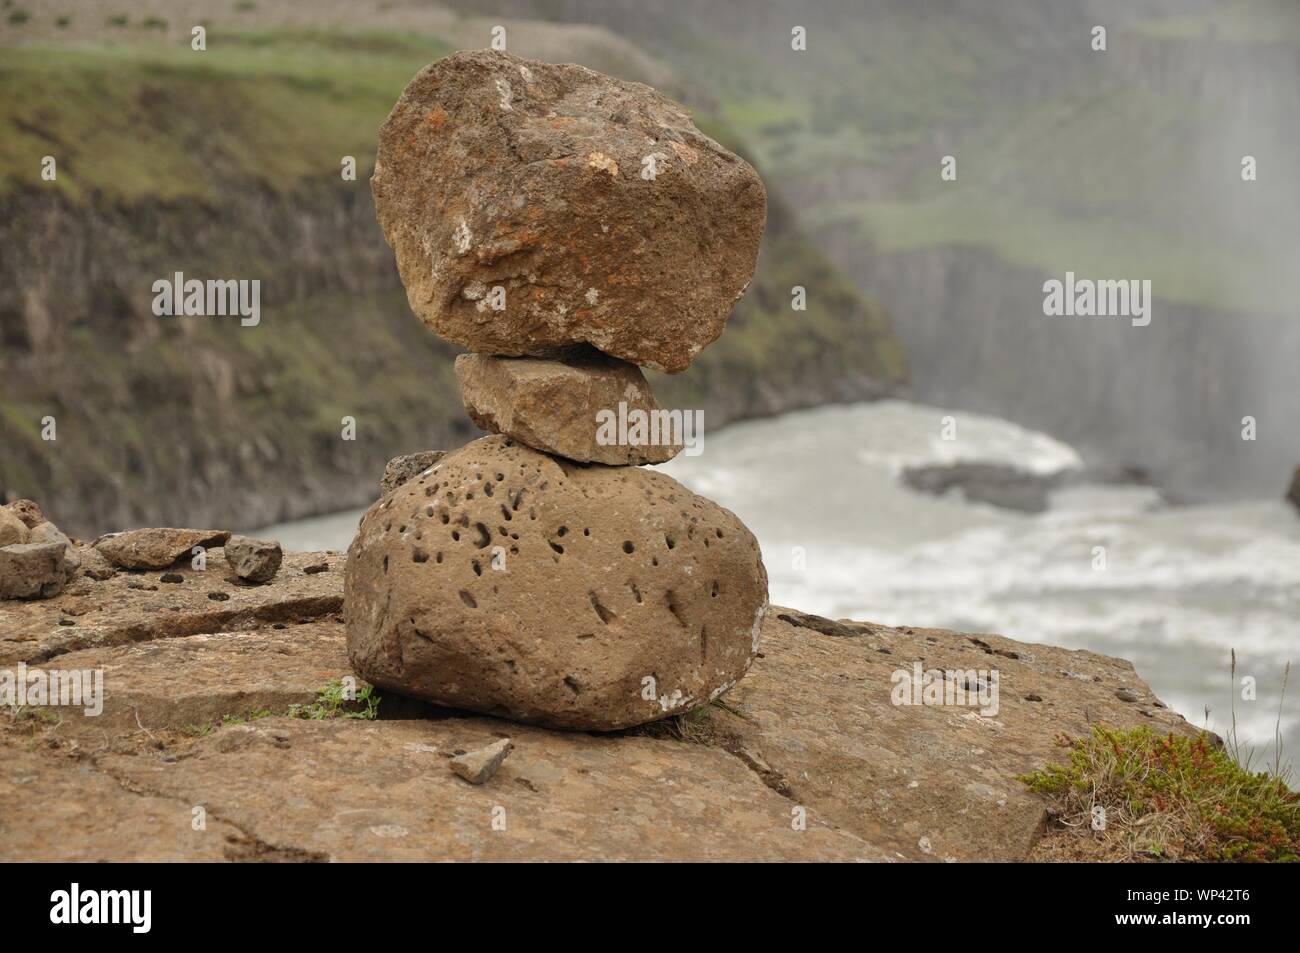 Am Gullfoss von Menschen gebaute kleine Steinfiguren. Foto Stock